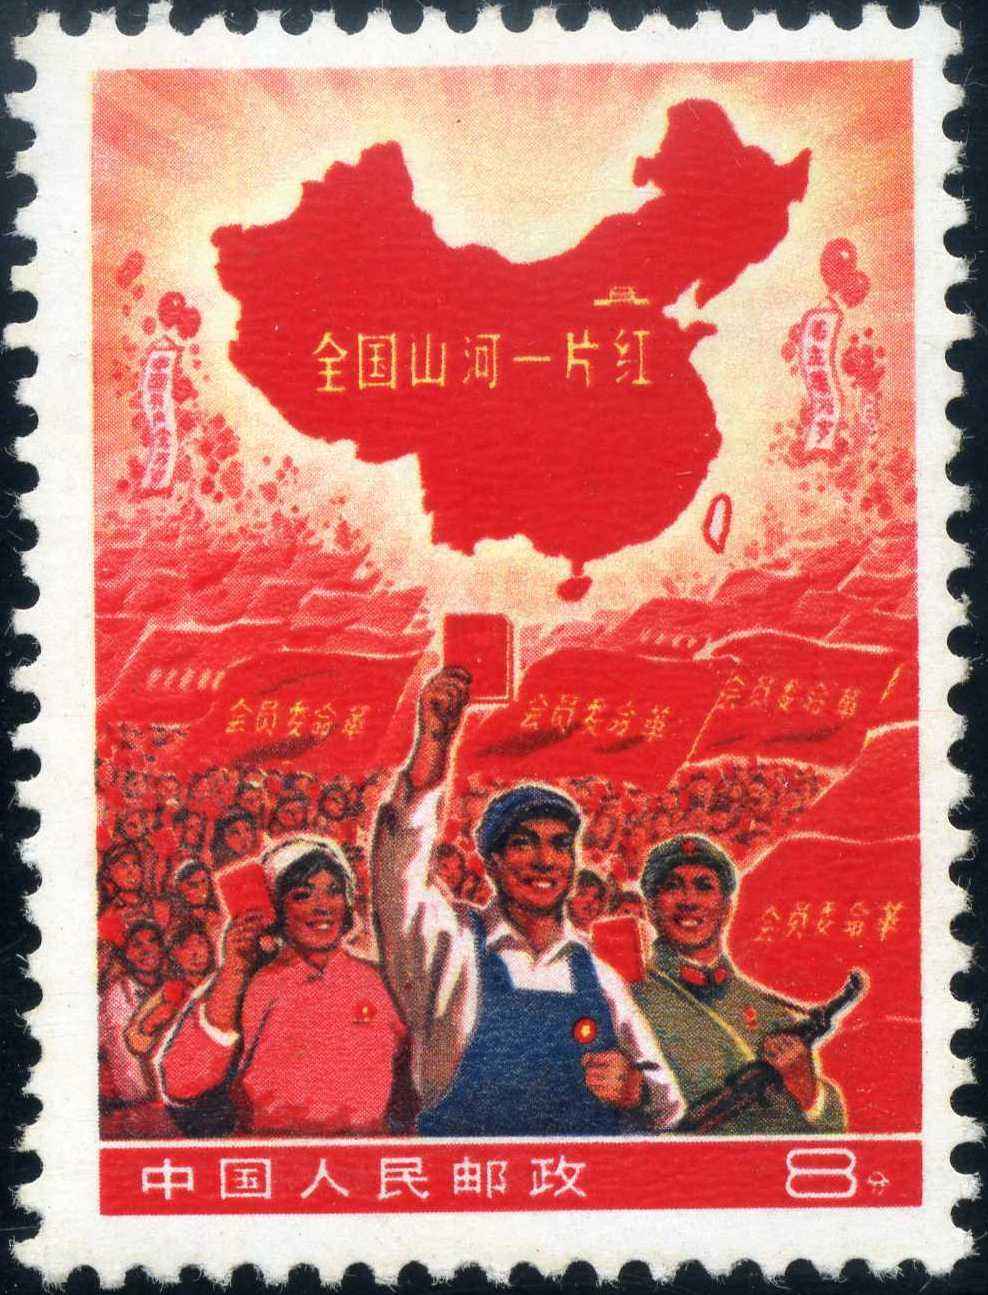 比80版猴票更值钱的邮票，一张能顶北京一套房，现存不足三百枚